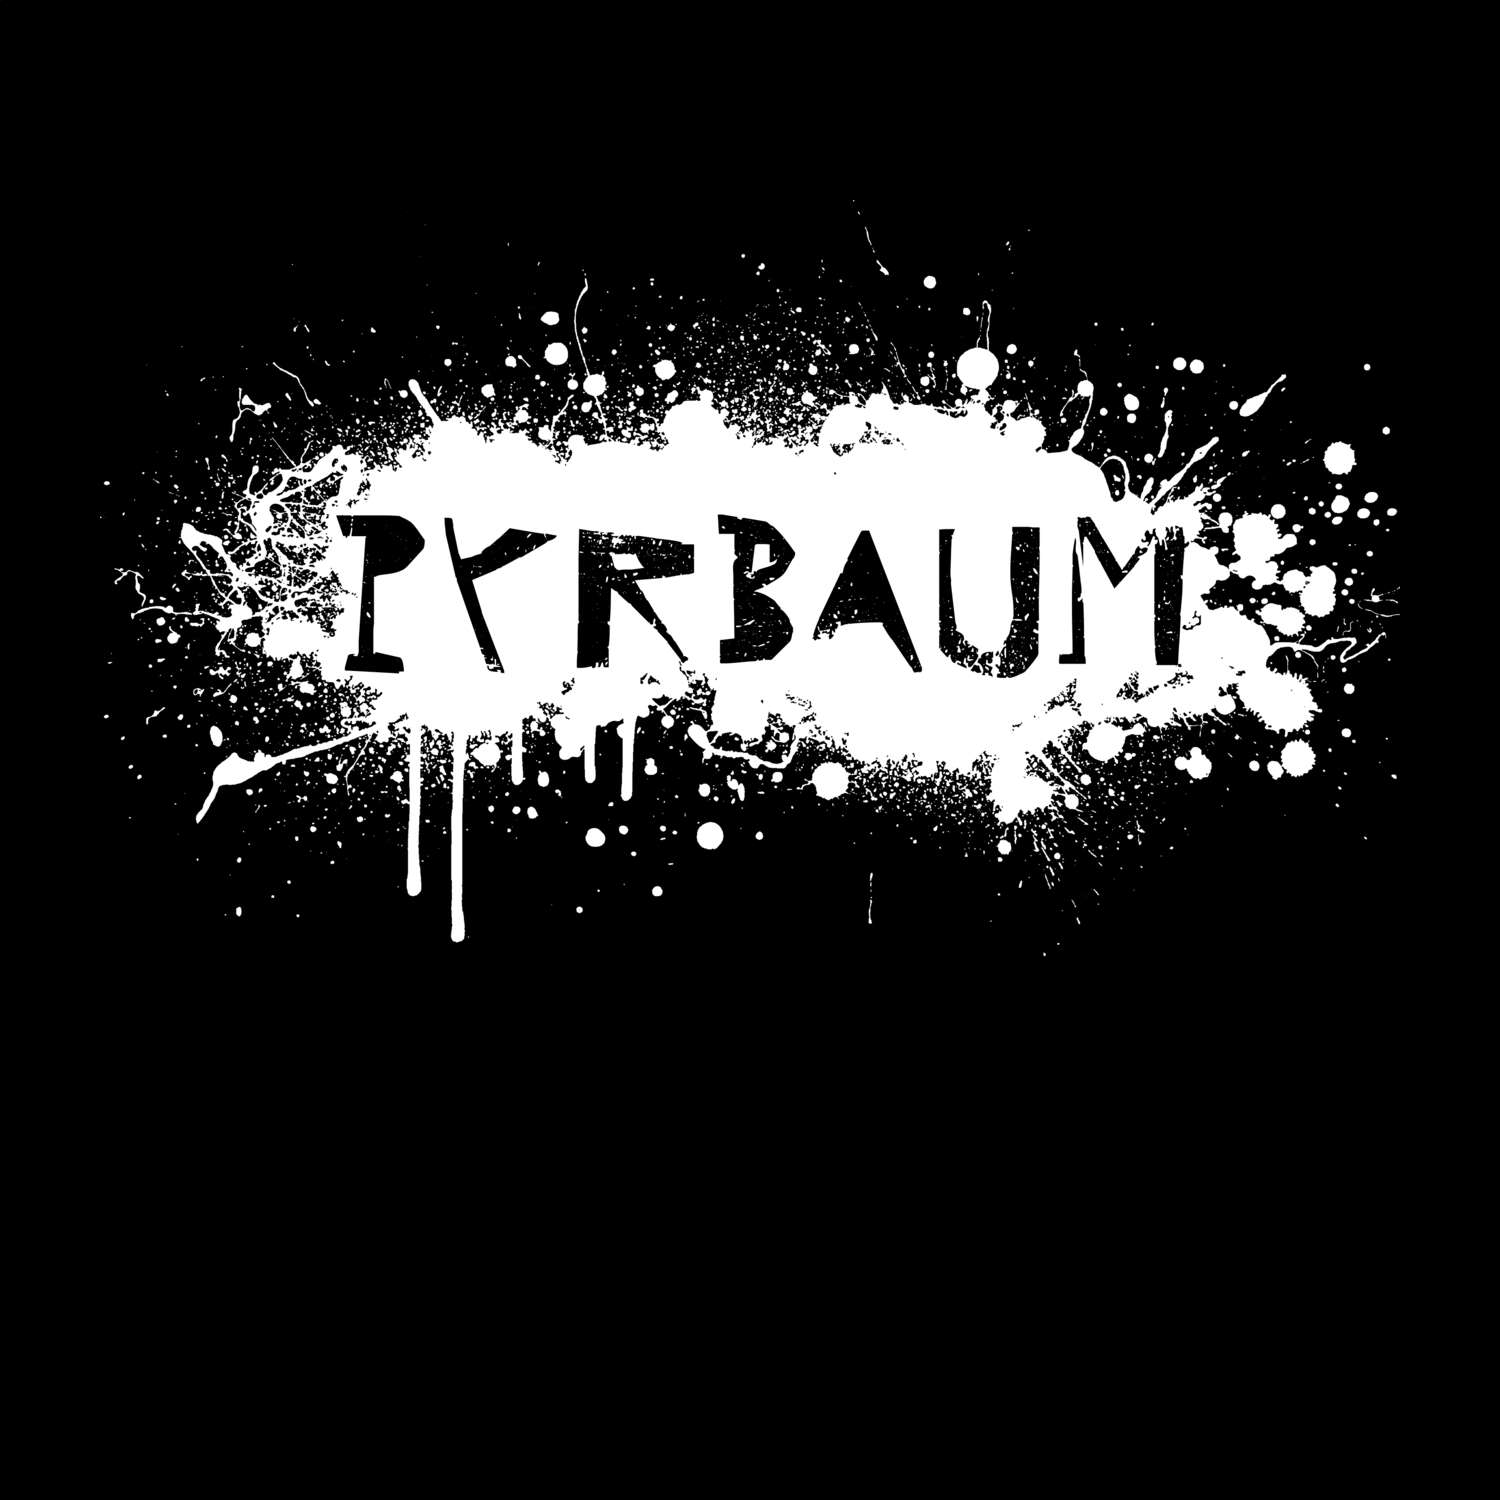 Pyrbaum T-Shirt »Paint Splash Punk«